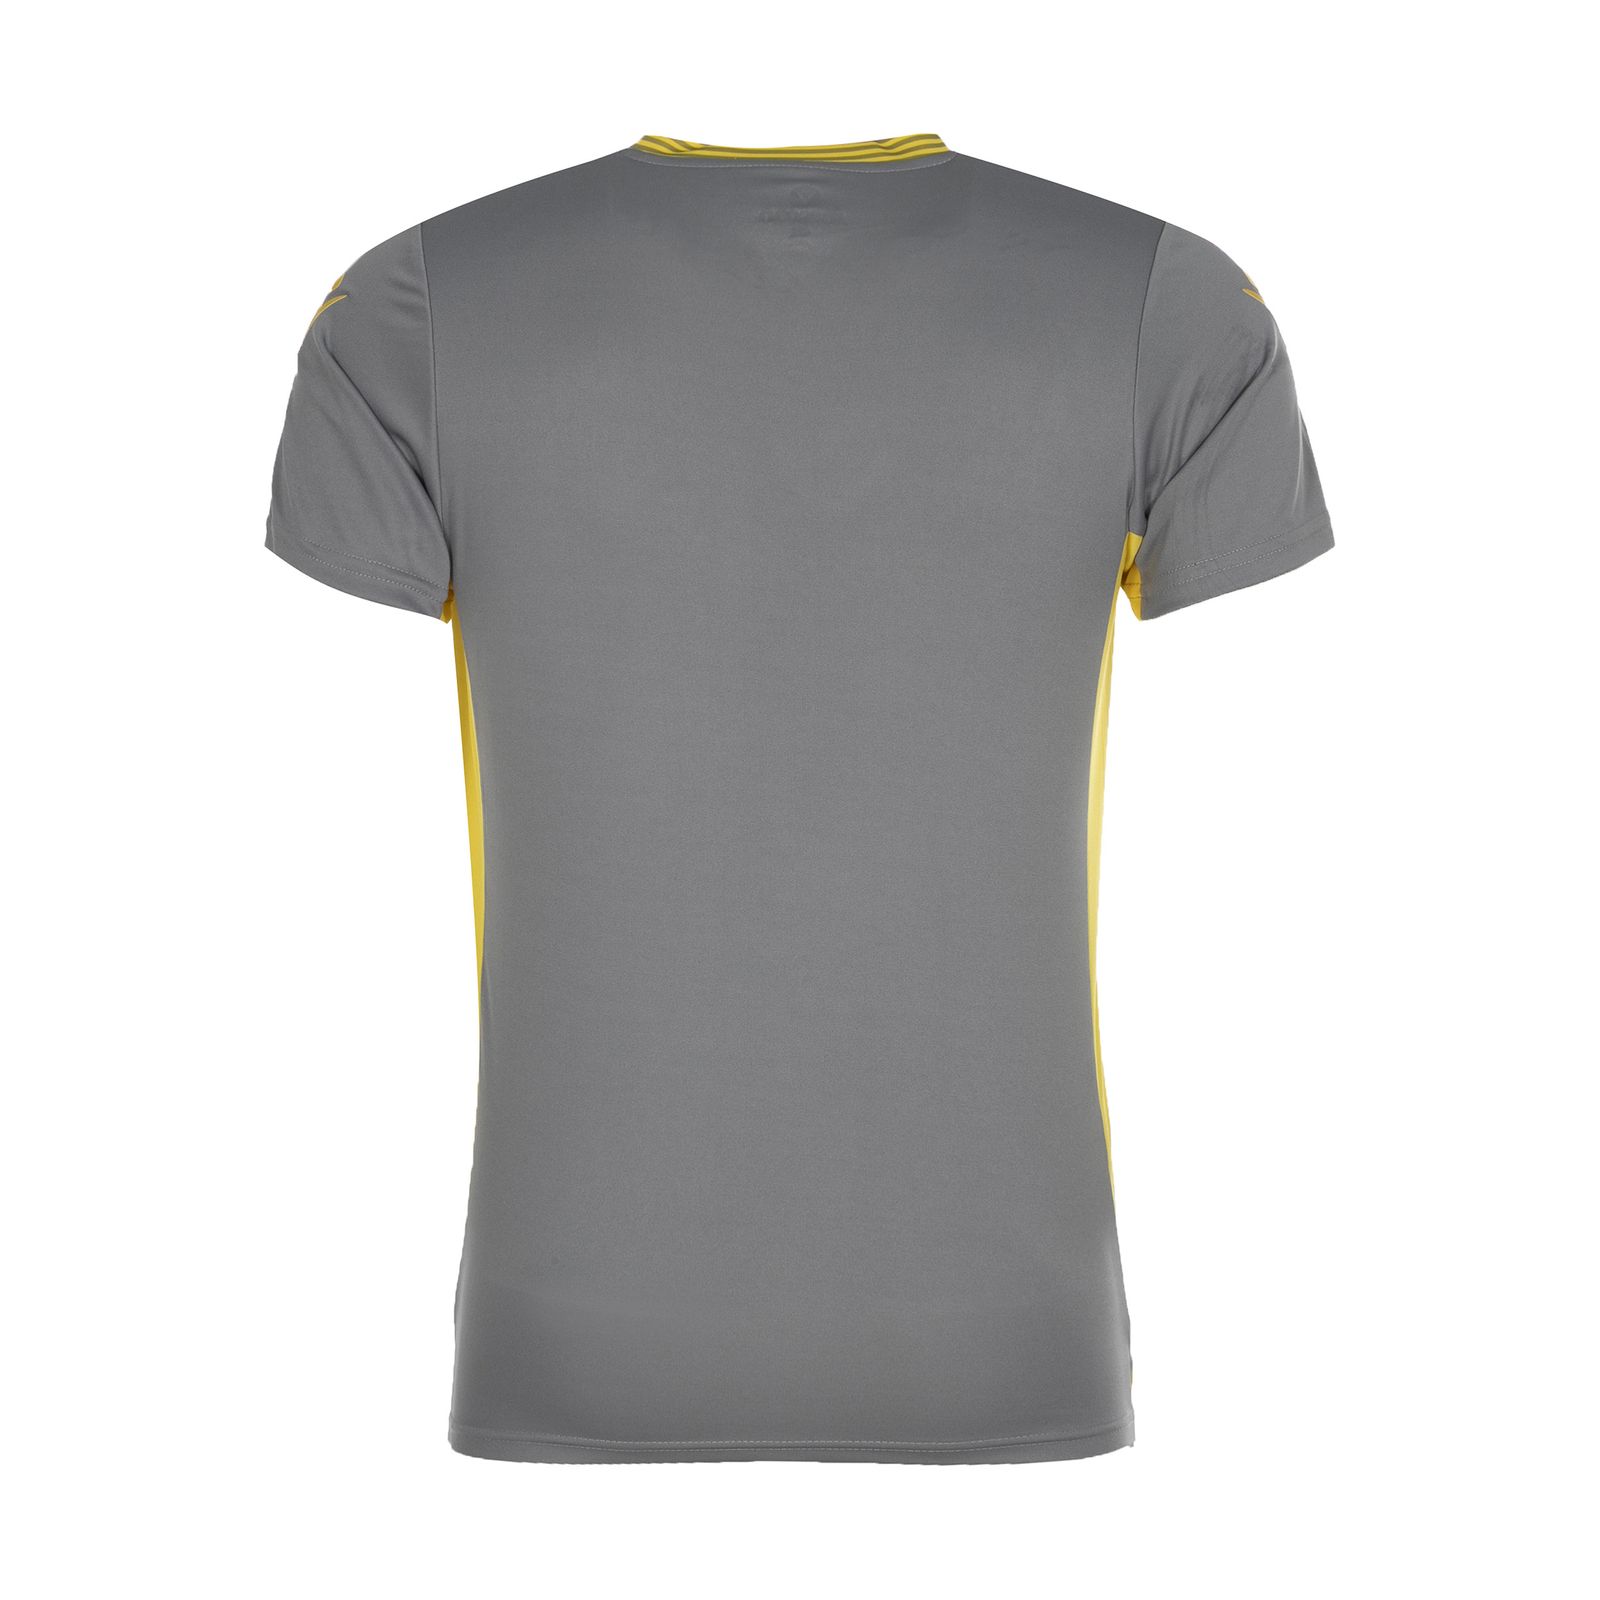 ست تی شرت و شلوارک ورزشی مردانه مکرون مدل کاناپوس رنگ طوسی -  - 3